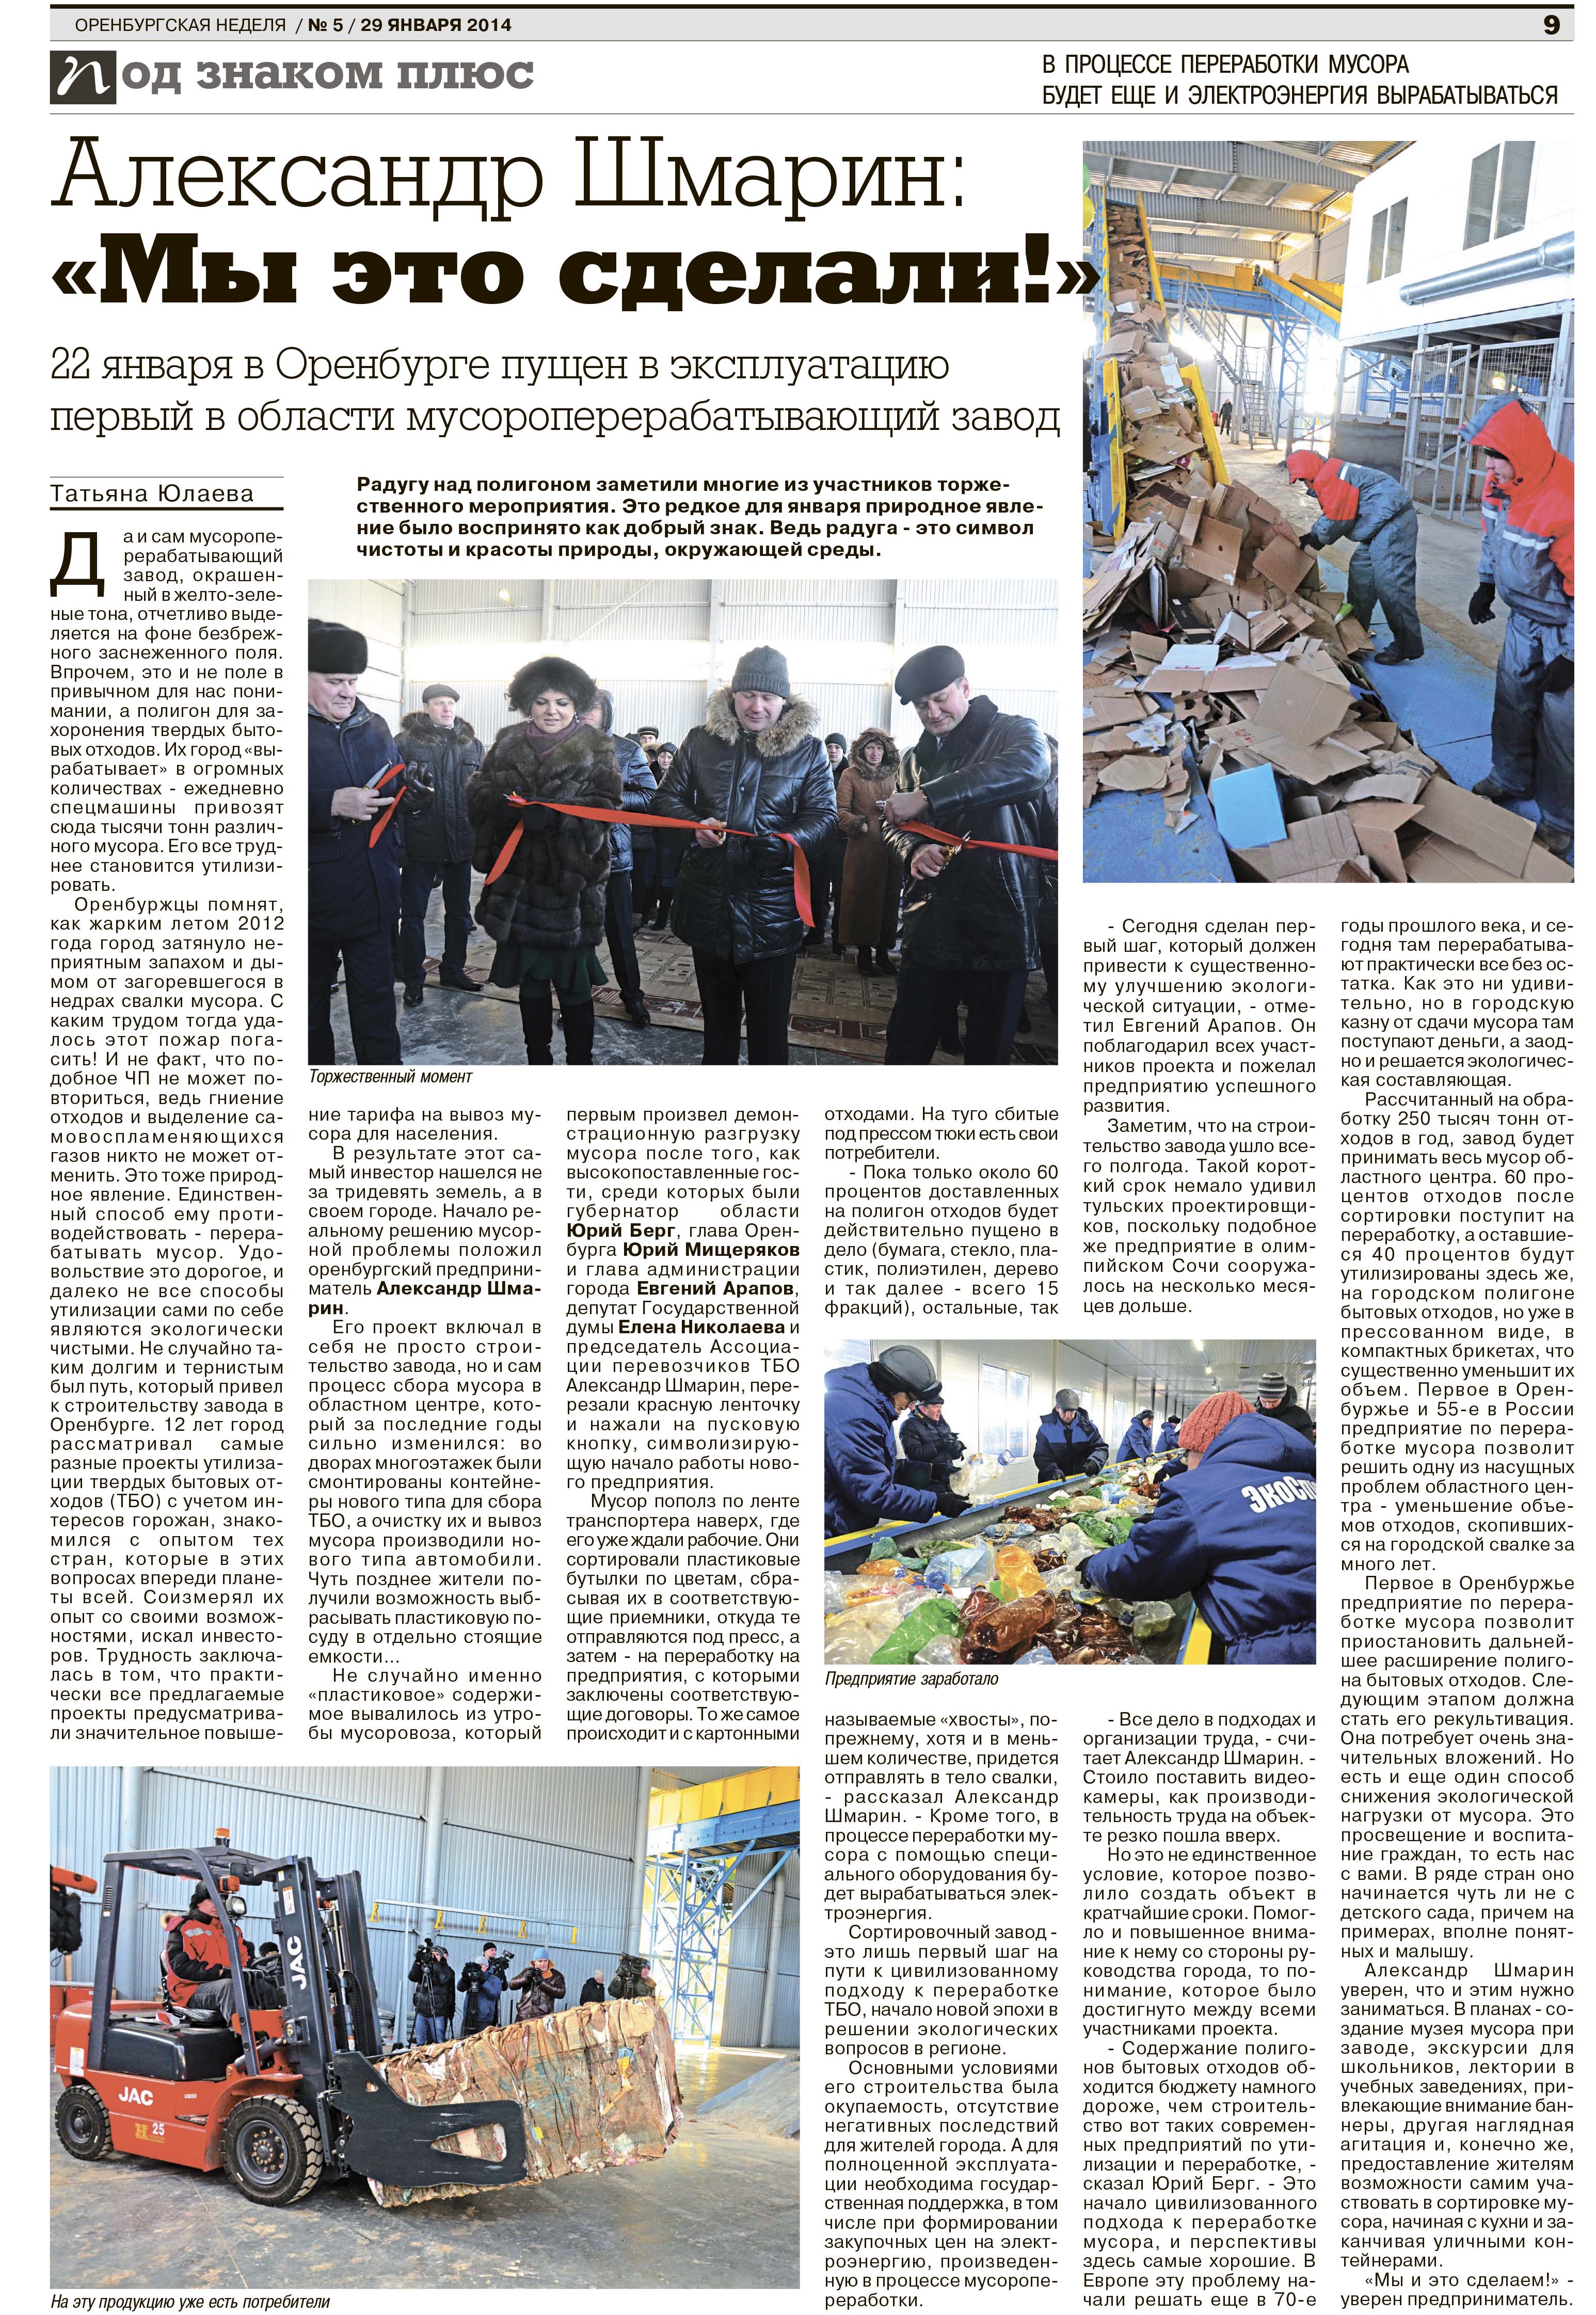 Оренбургская неделя выпуск № 5 от 29 янв 2014